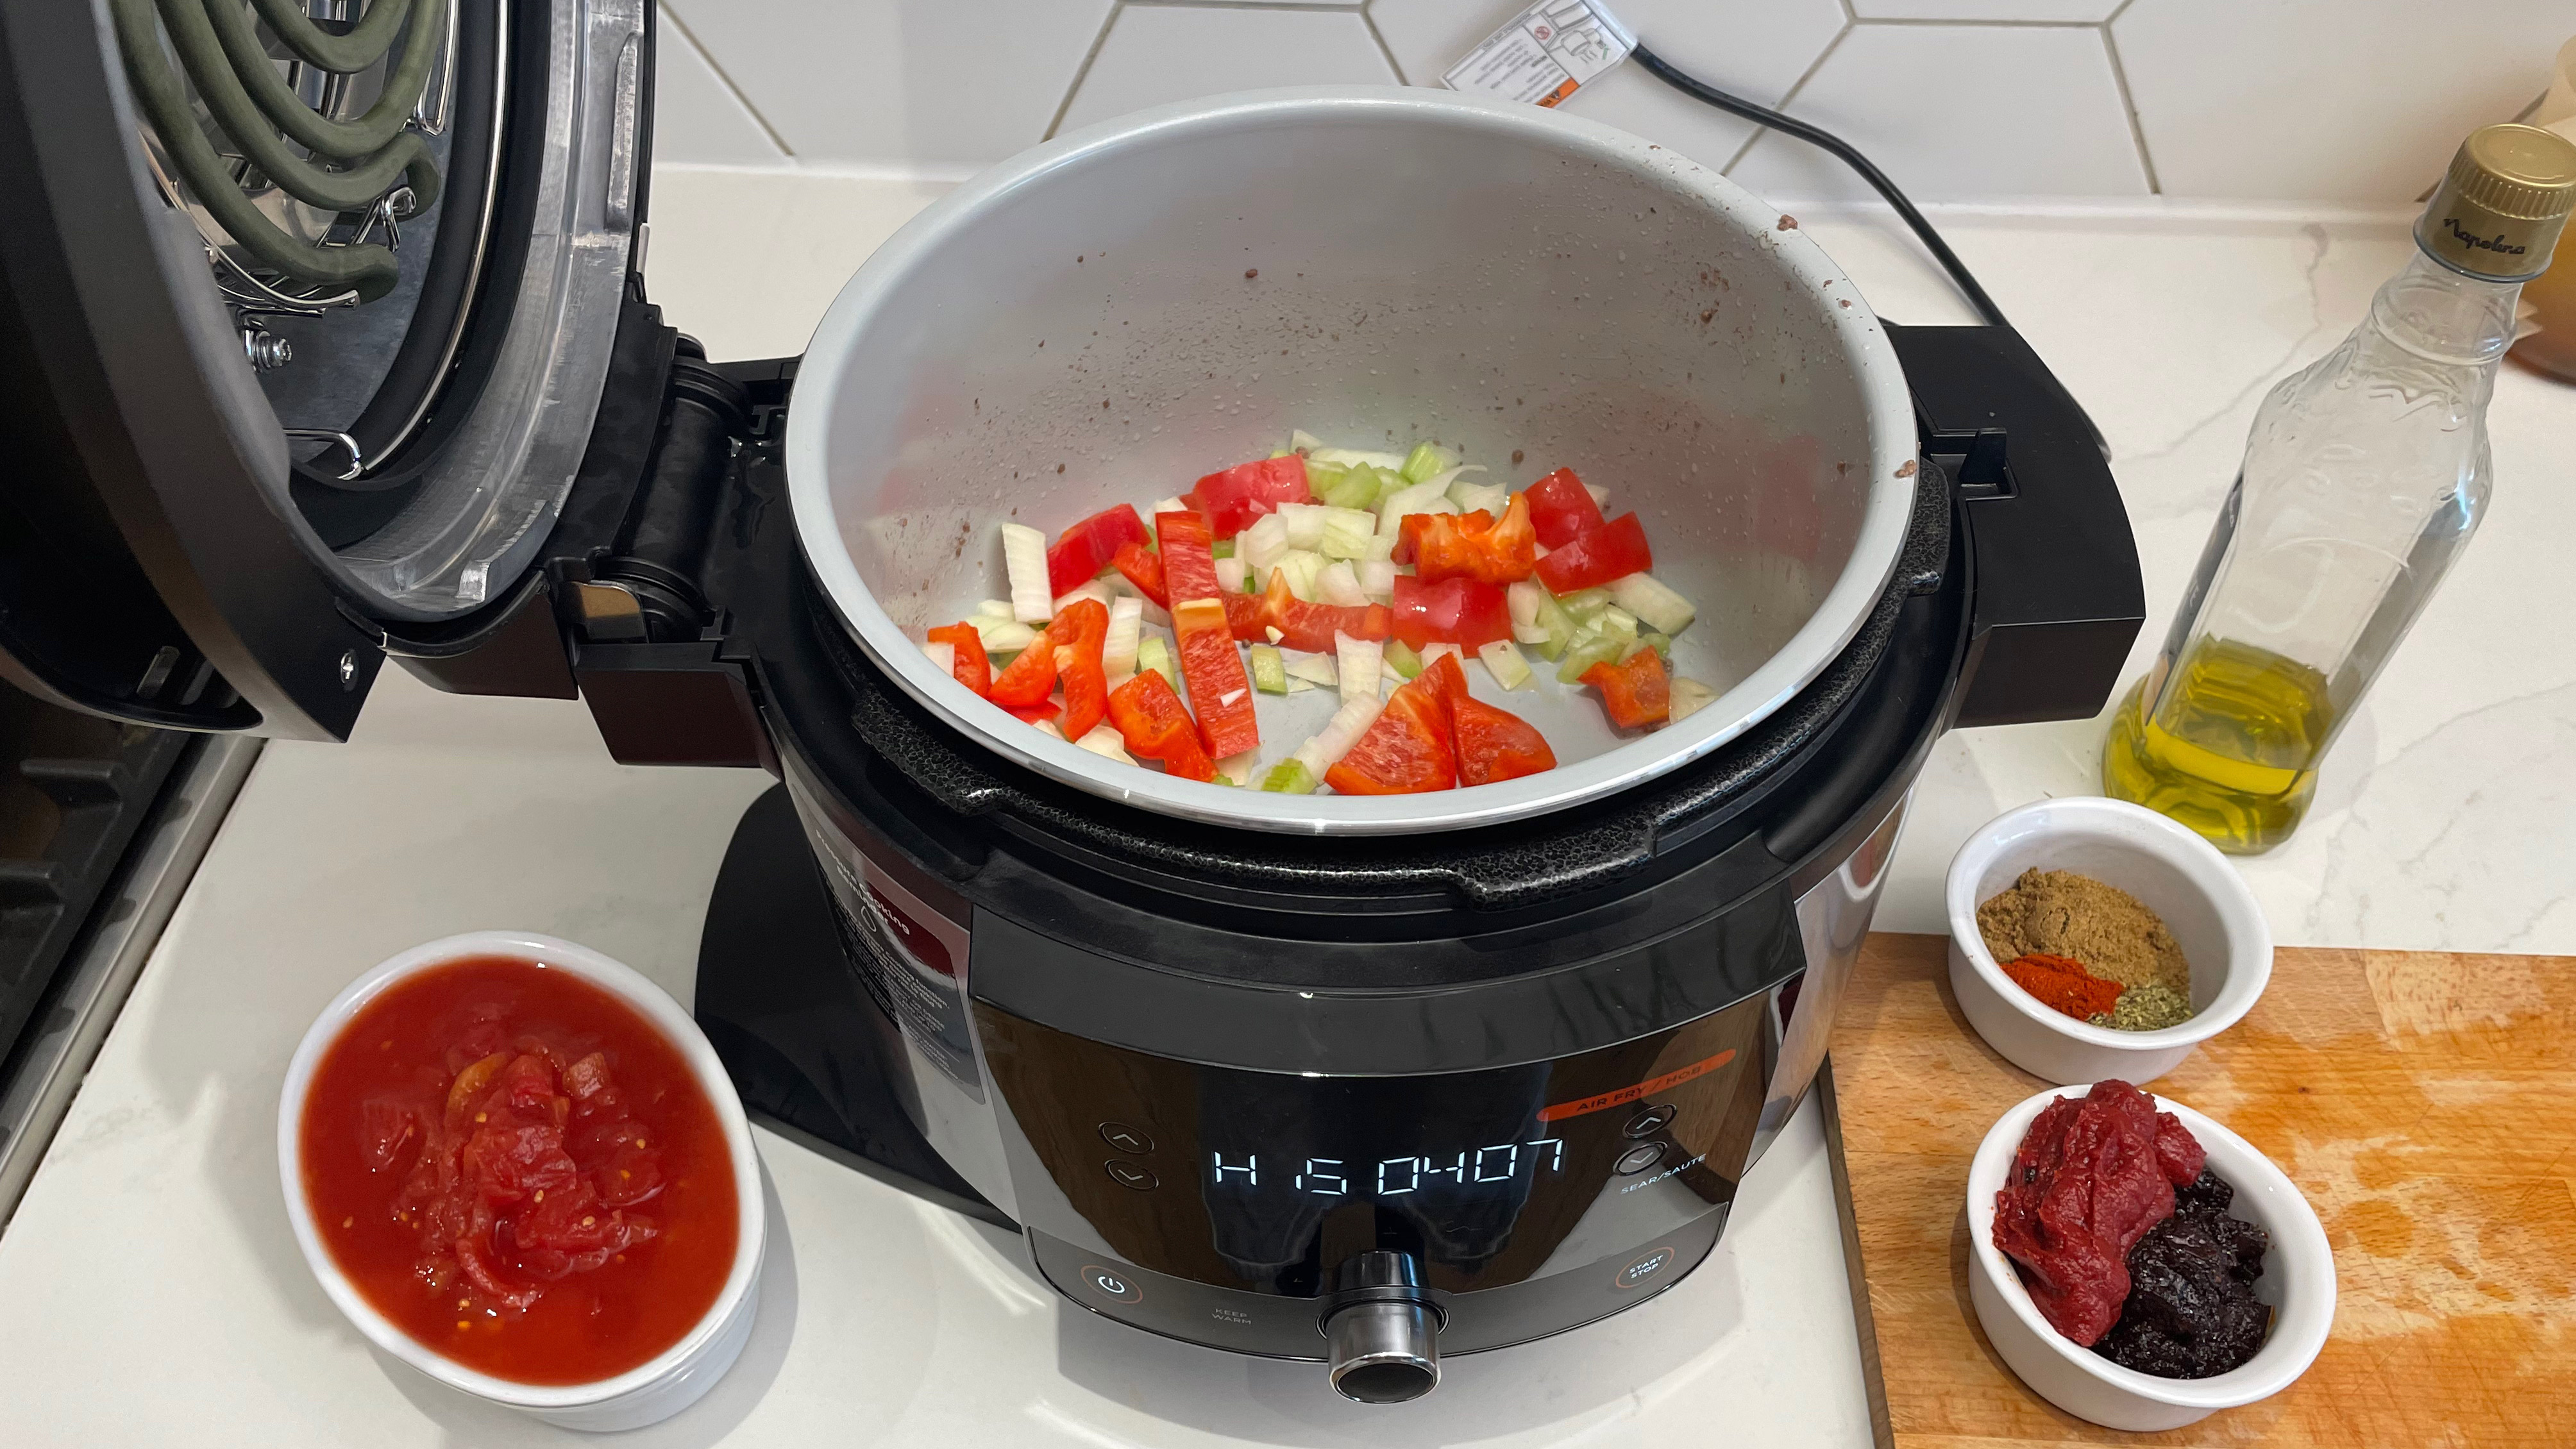 Tumis bawang bombay dan paprika di multi-cooker SmartLid Ninja Foodi 11-in-1 siap memasak cabai